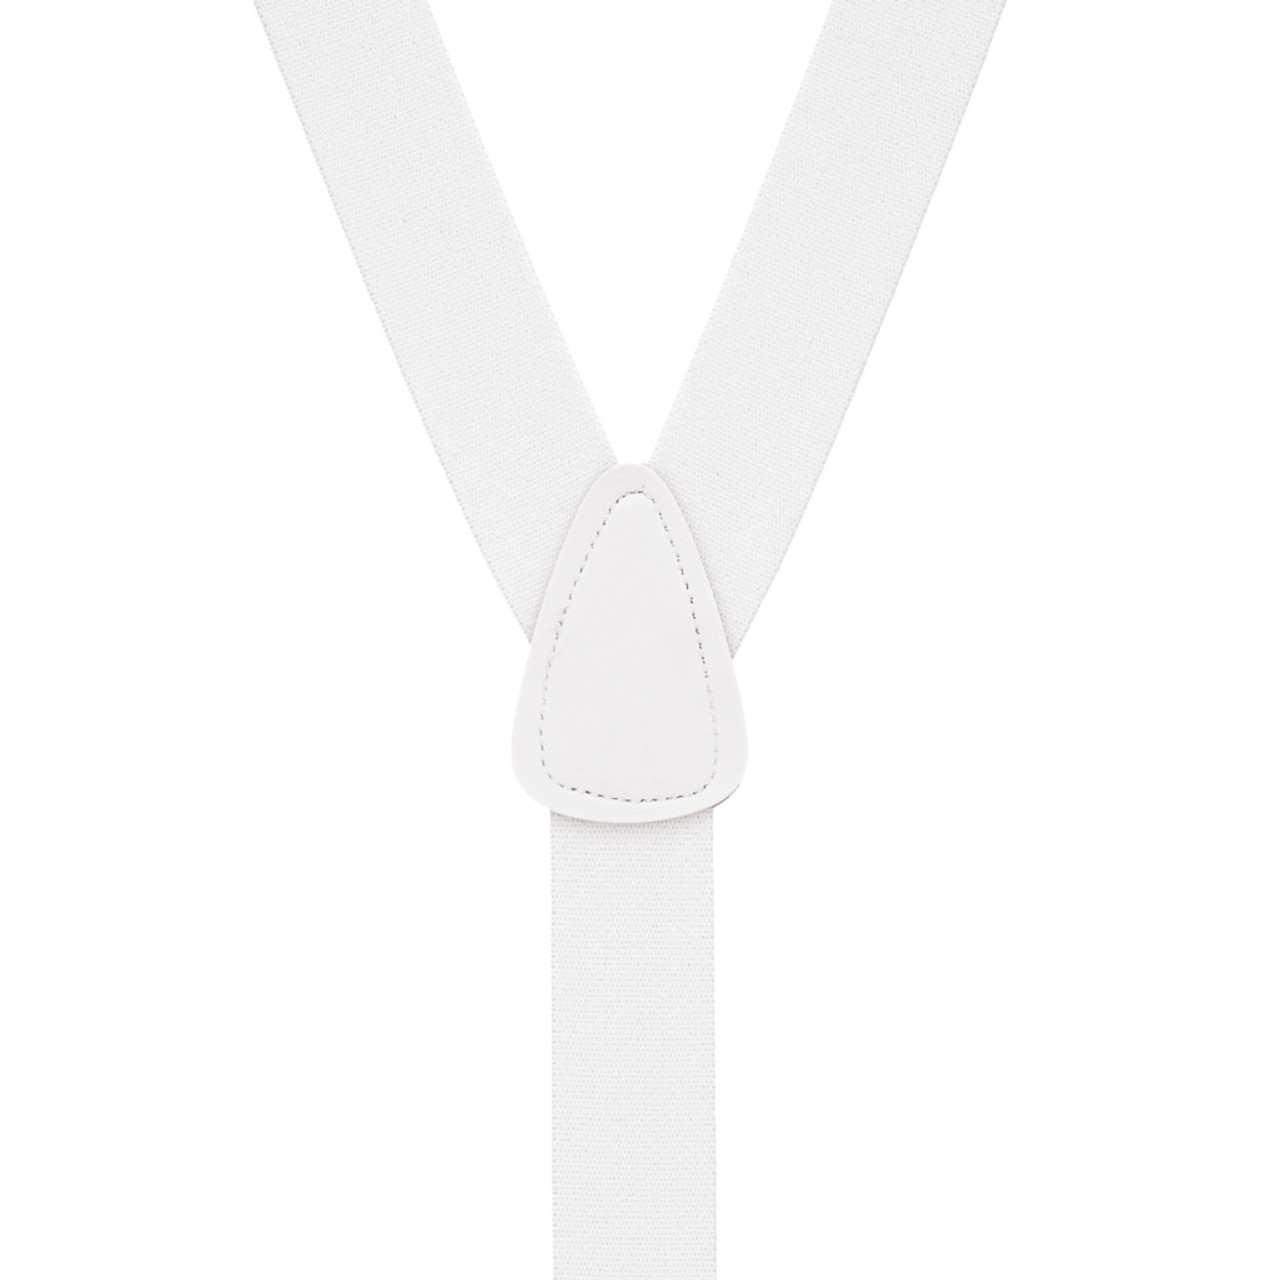 1.25 Inch Wide Button Suspenders - WHITE